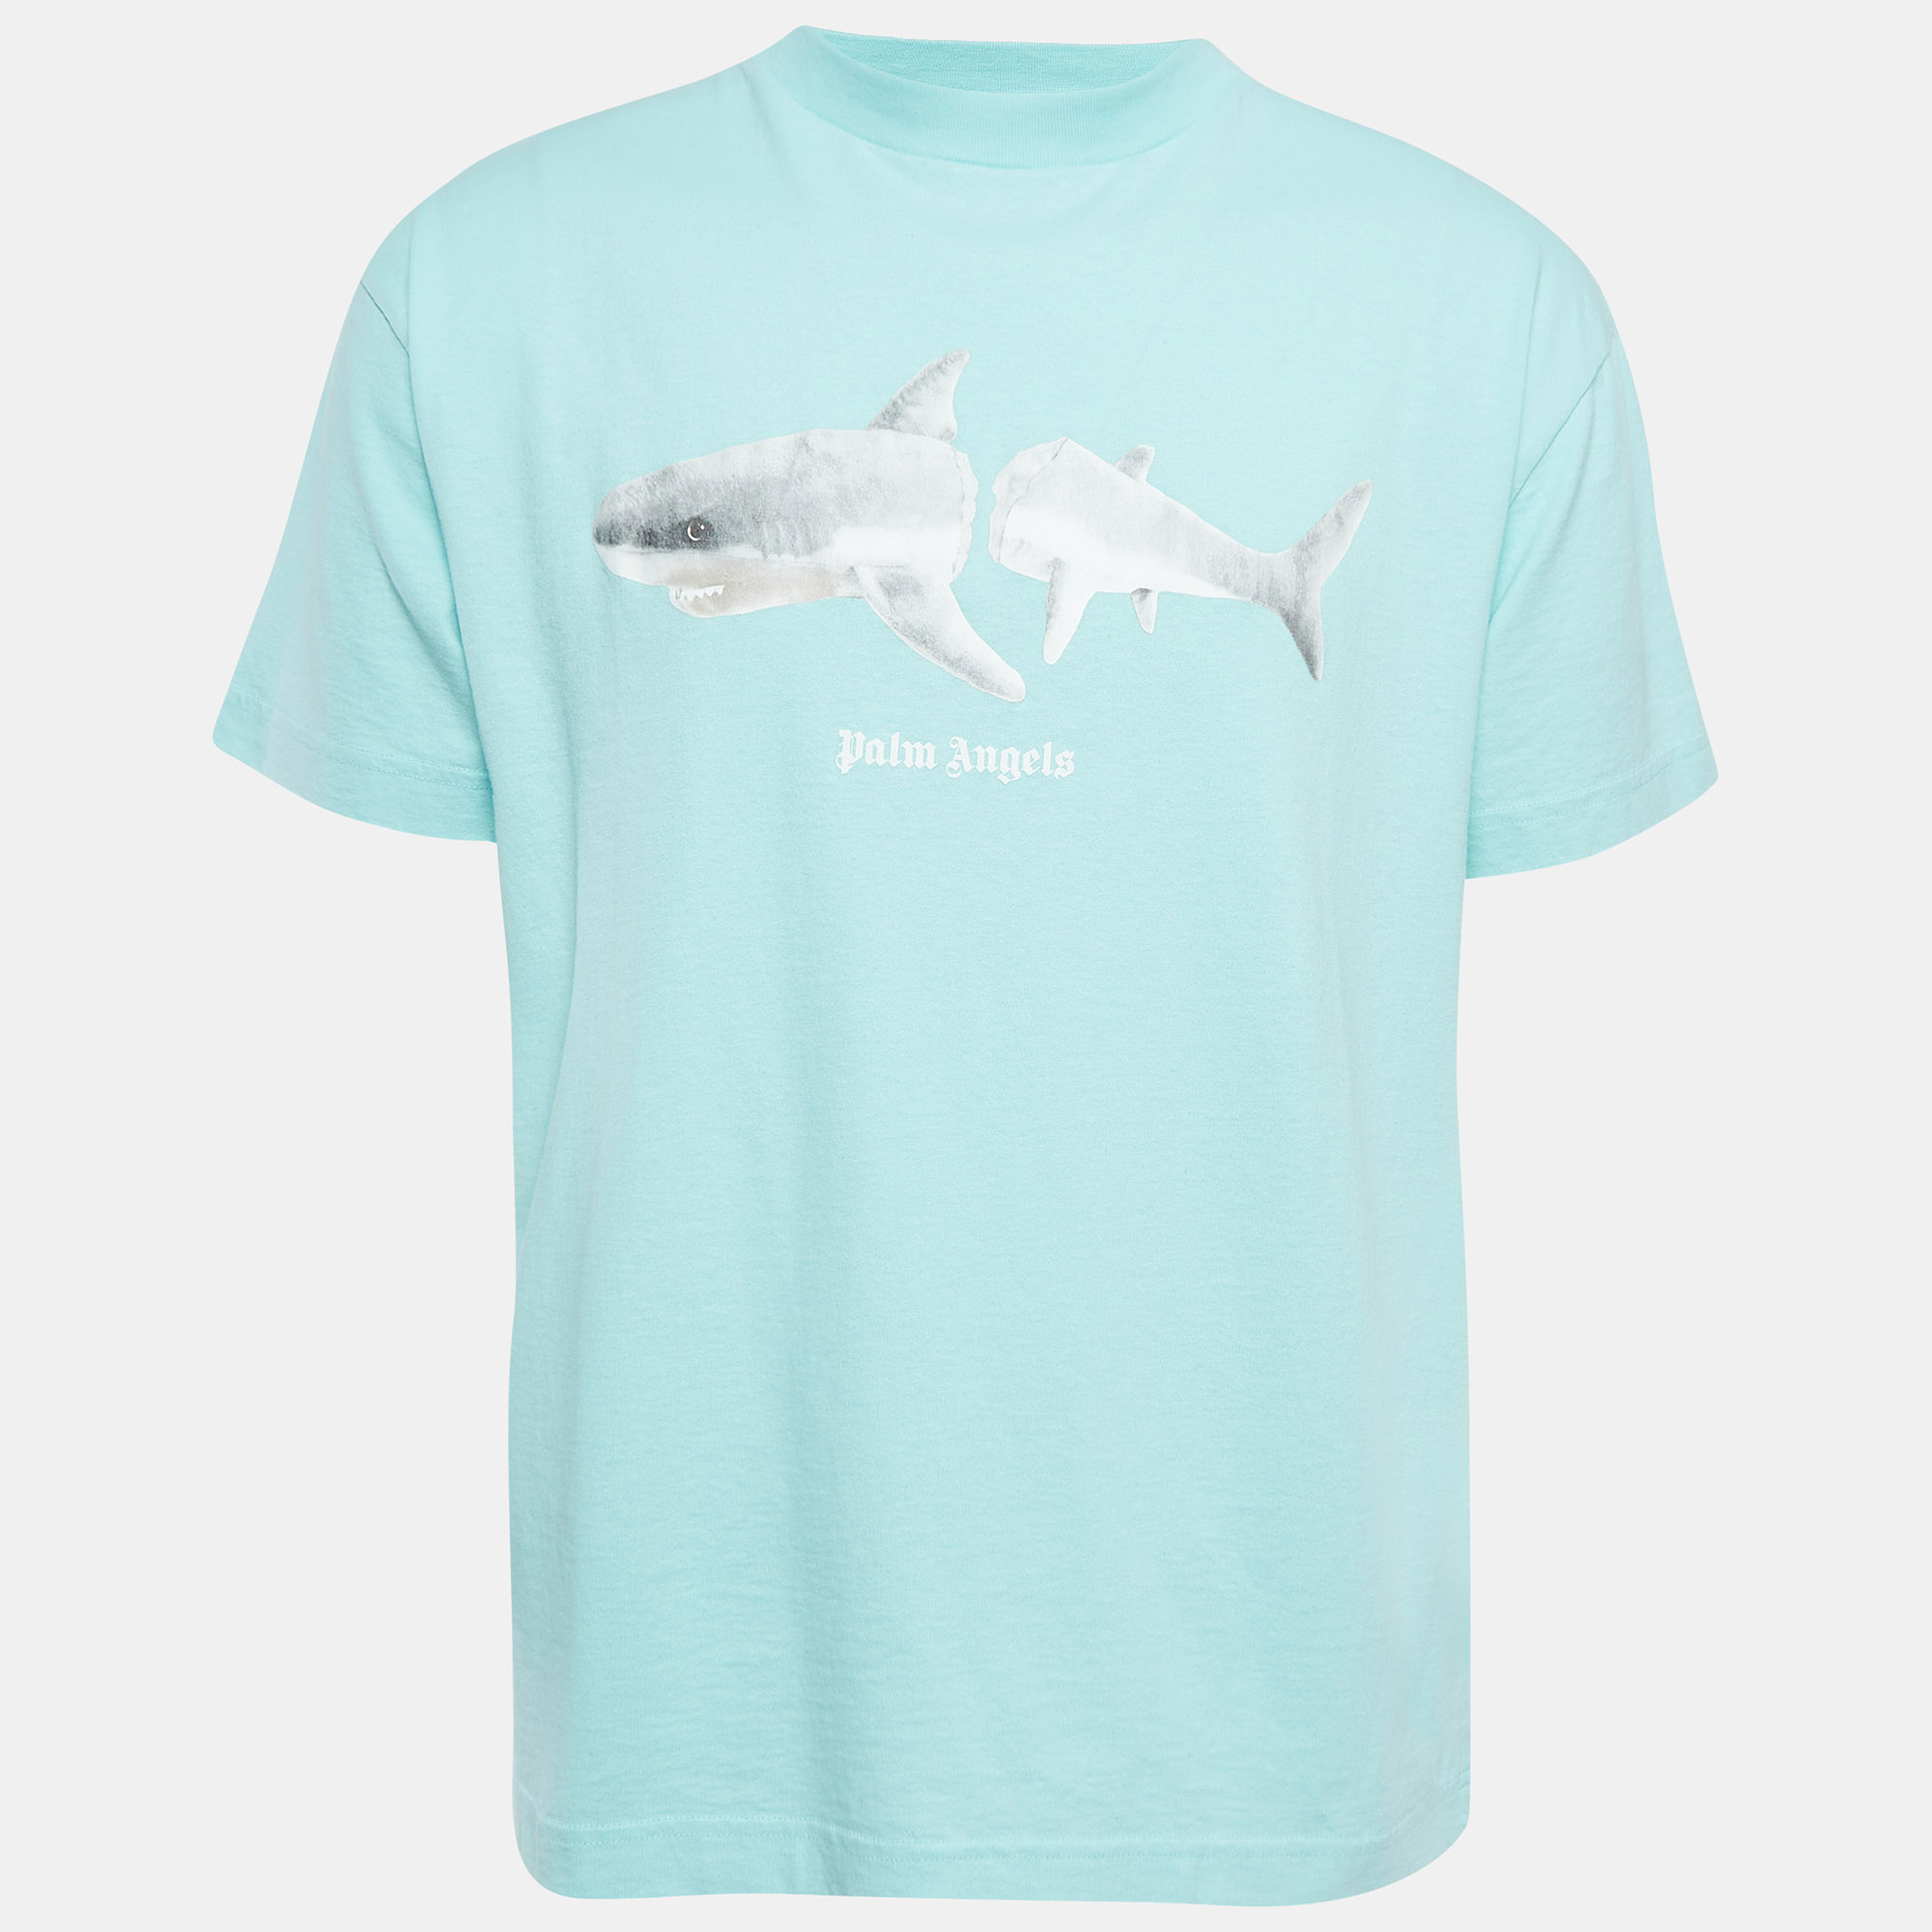 

Palm Angels Blue Broken Shark Print Cotton T-Shirt M